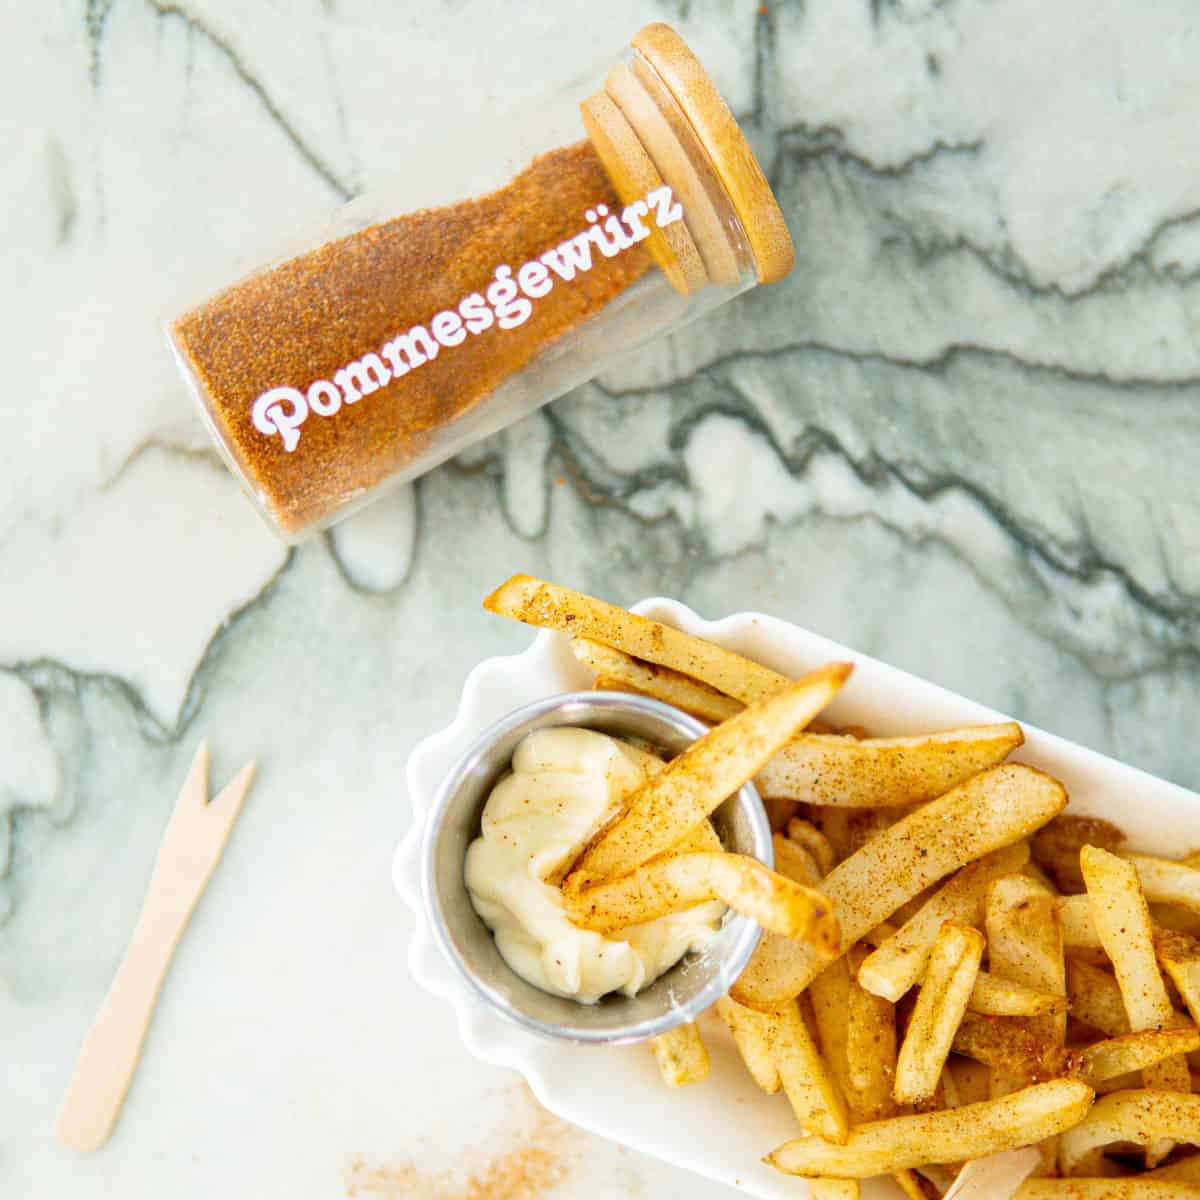 Yummy French Fry Seasoning: The Secret Revealed